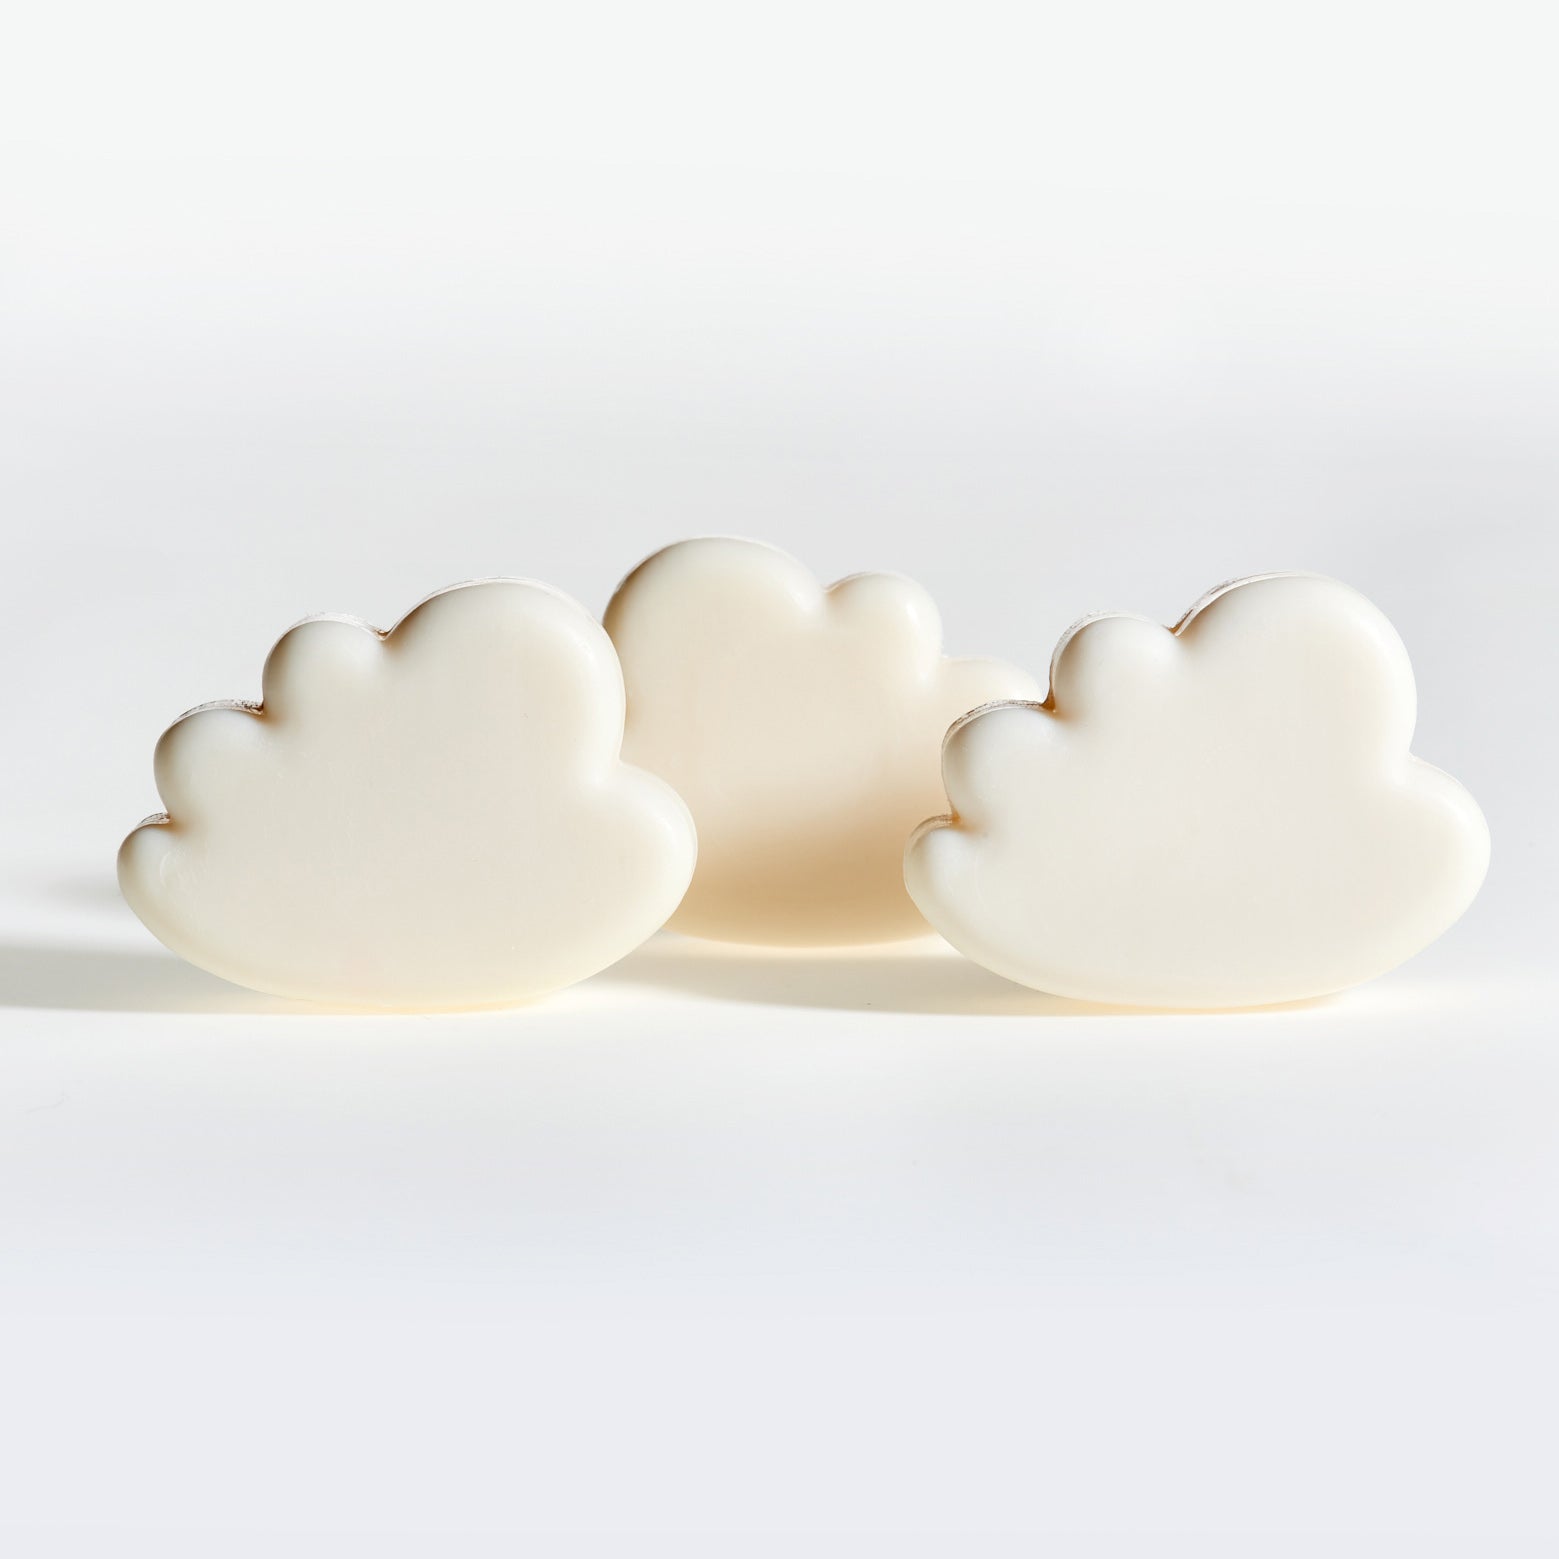 Little Clouds - 3 kleine Wolkenseifen